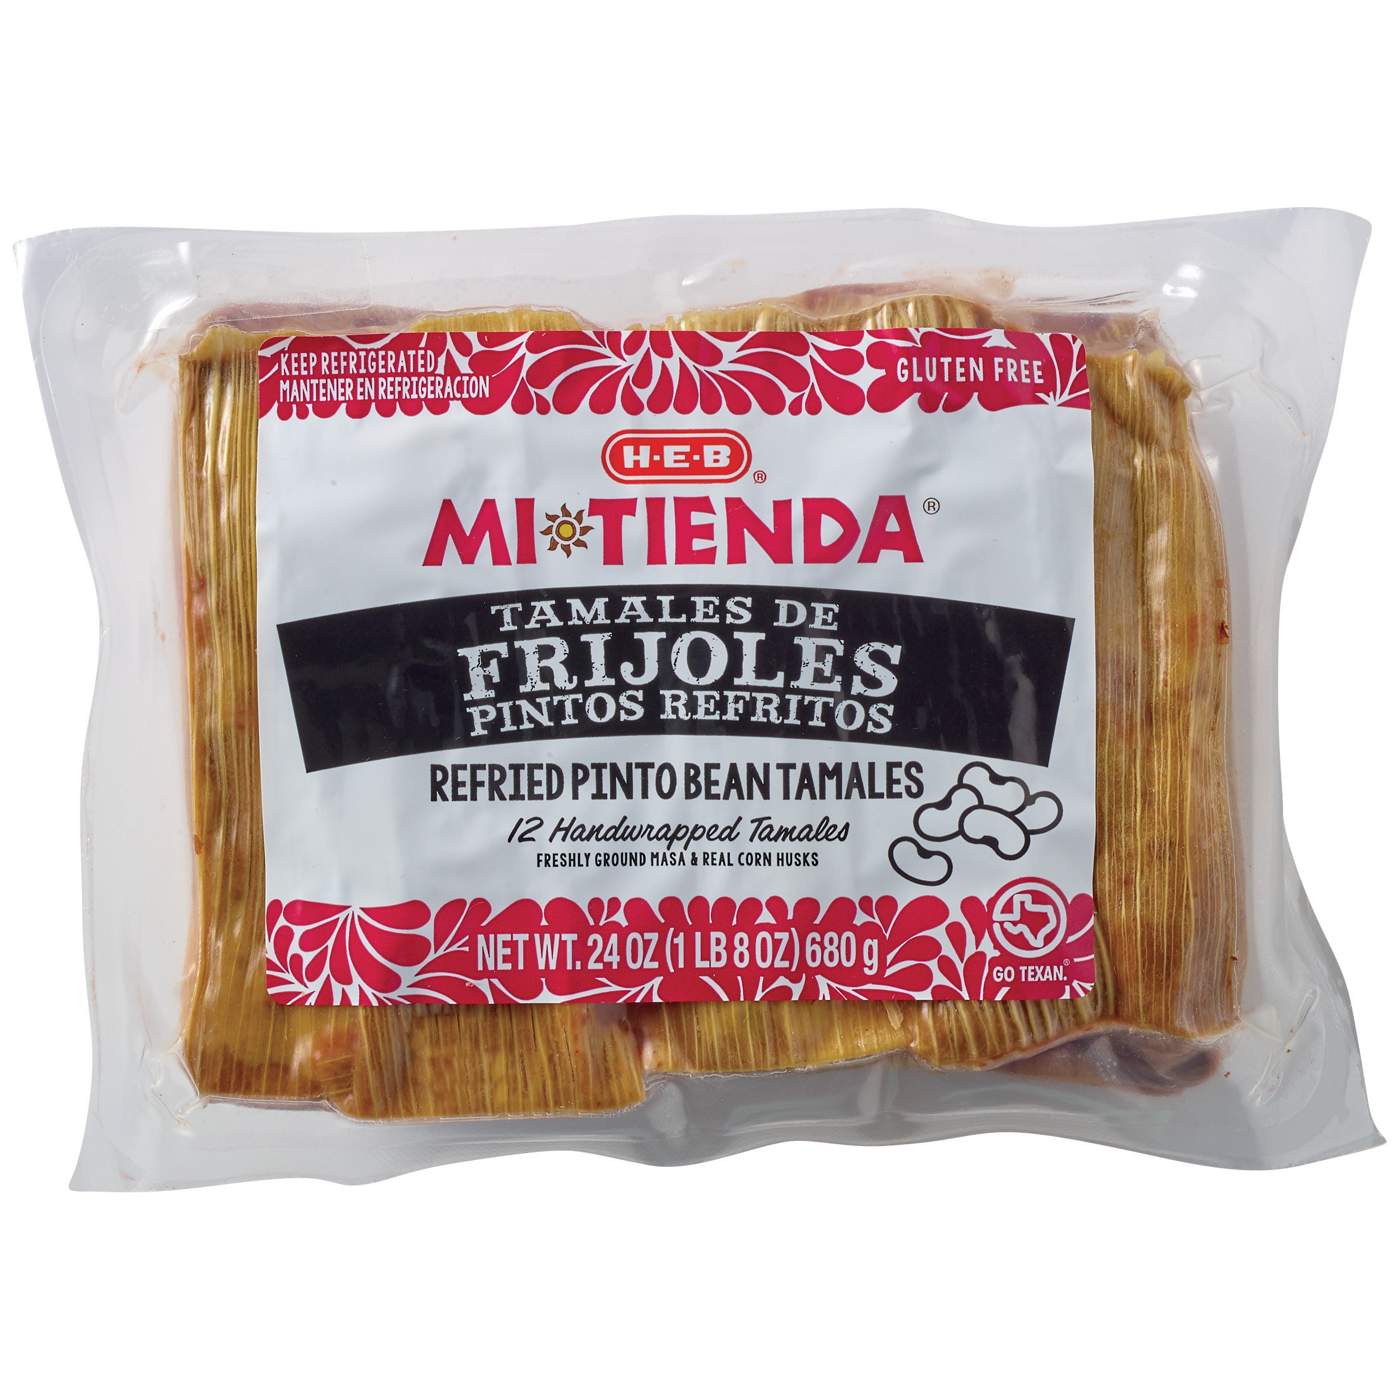 H-E-B Mi Tienda Refried Pinto Bean Tamales de Frijoles Refritos; image 1 of 2